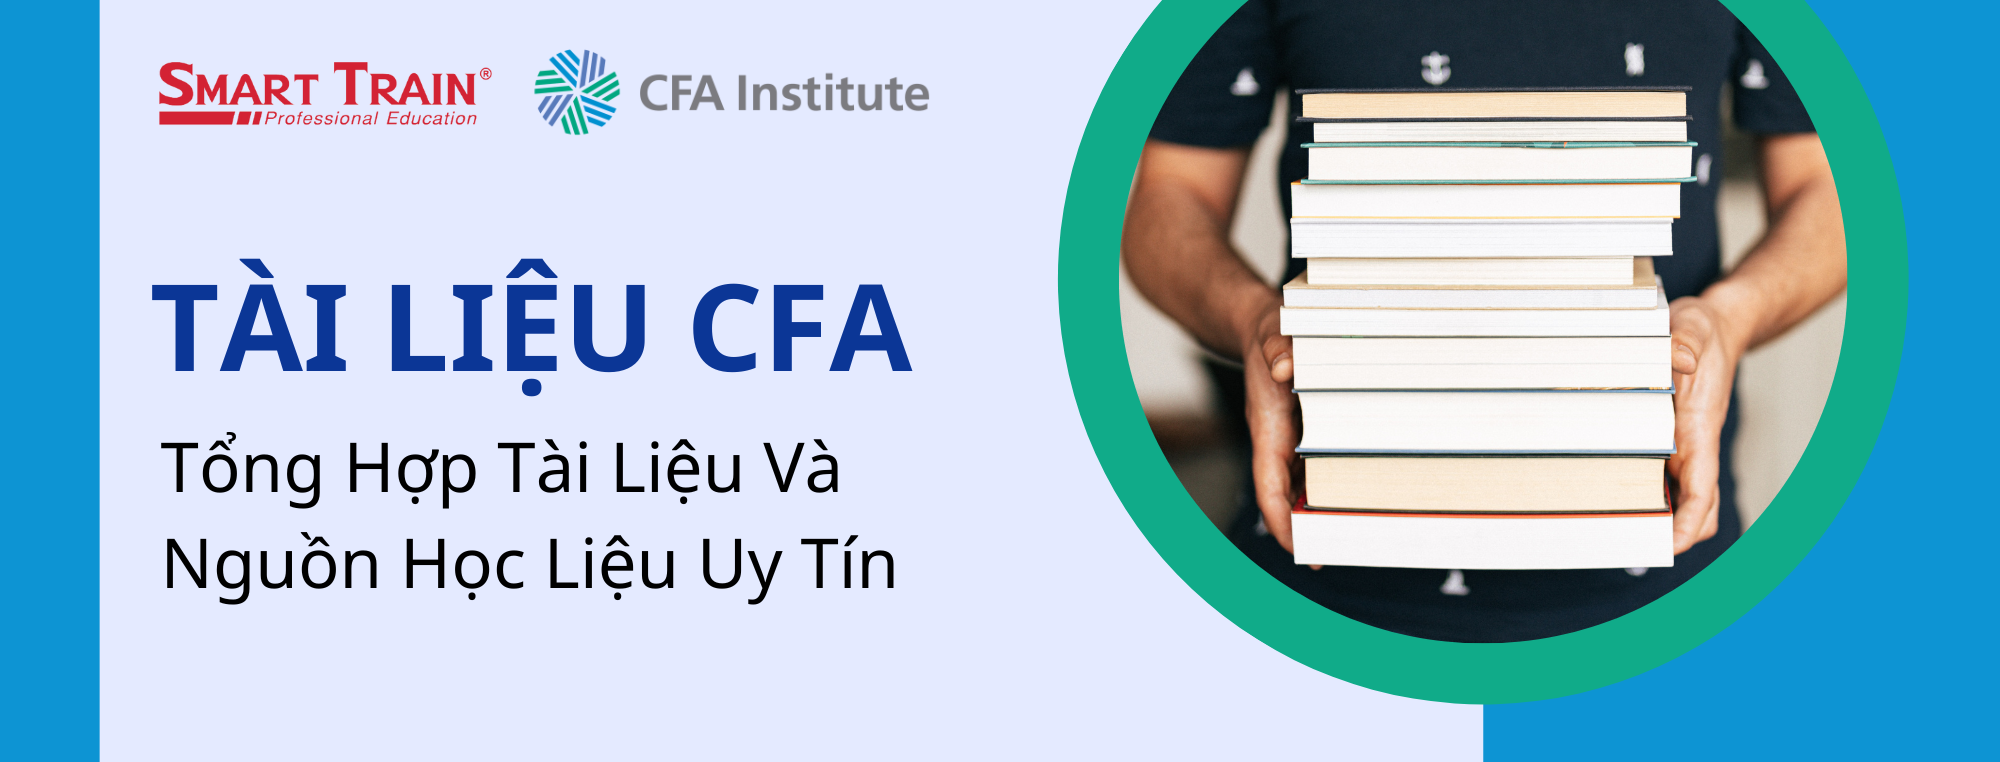 tài liệu CFA học CFA tại Smart Train Phân tích Đầu tư Tài chính